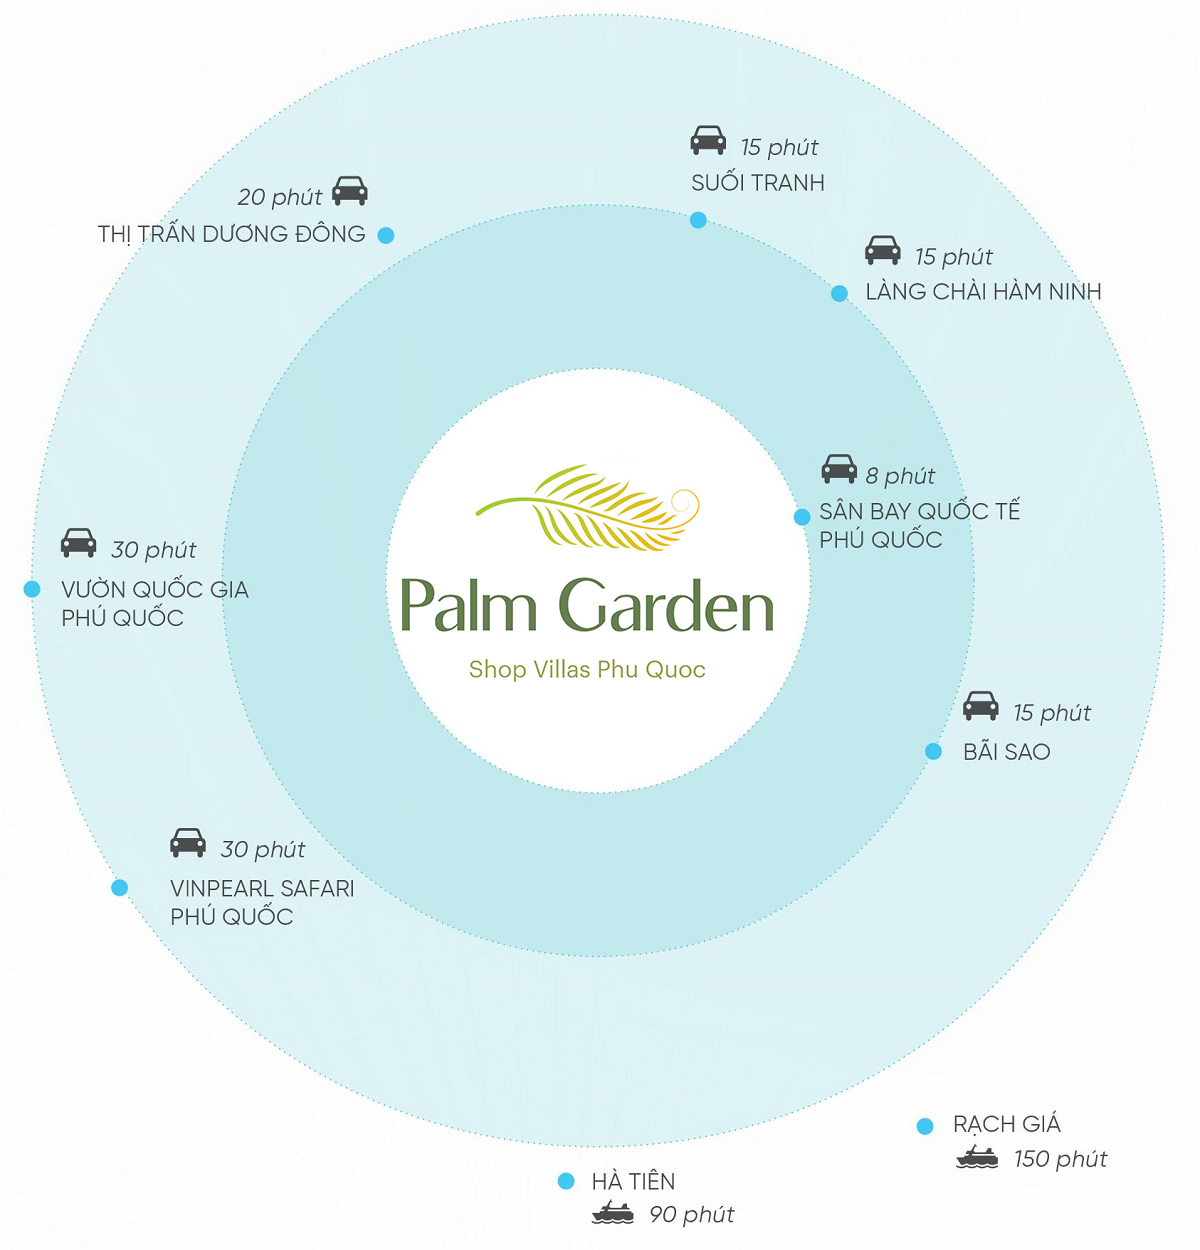 Hình ảnh về Palm Garden Shop Villas Phú Quốc